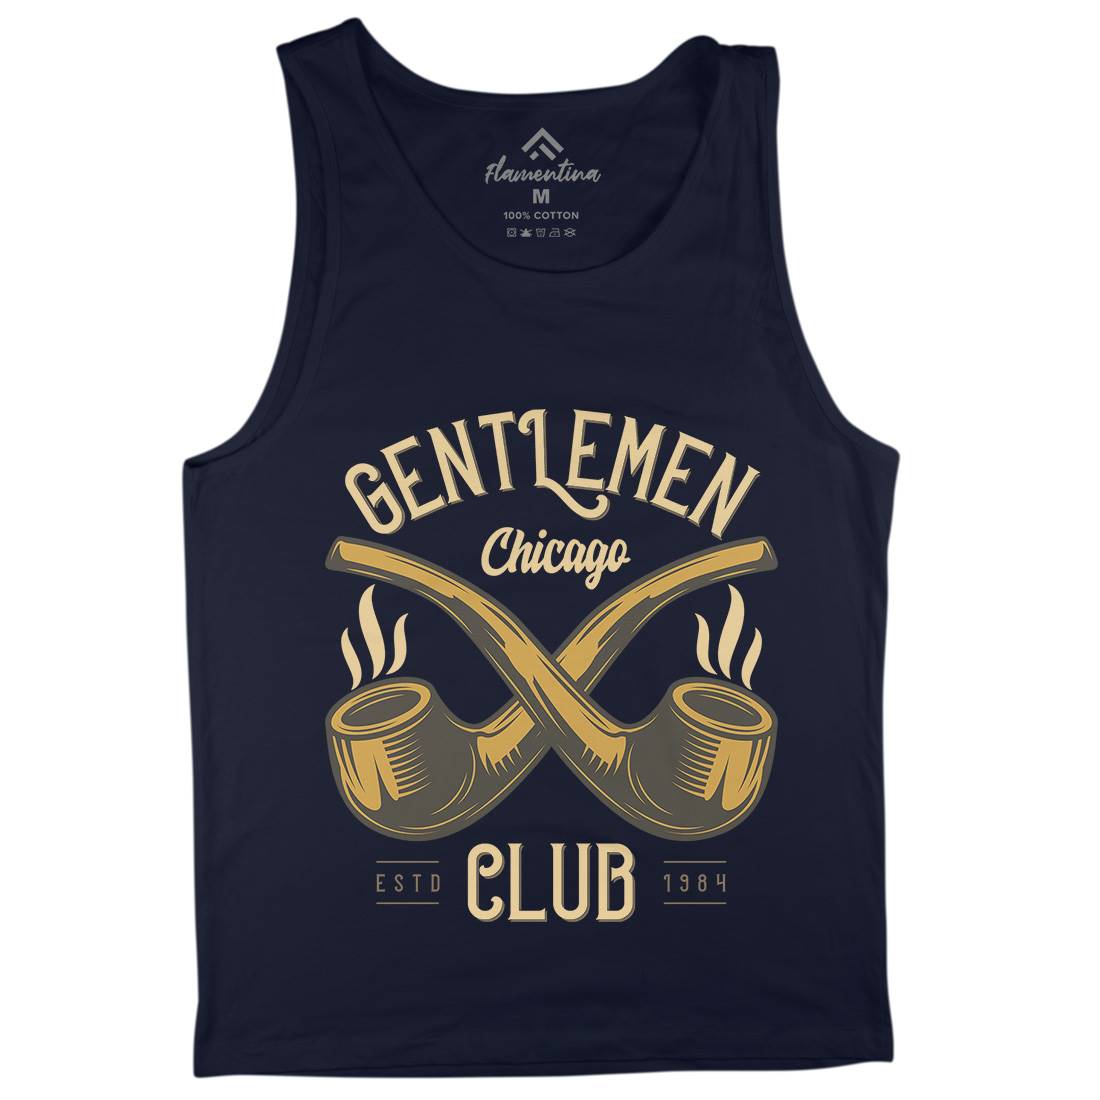 Gentlemen Club Mens Tank Top Vest Barber C850